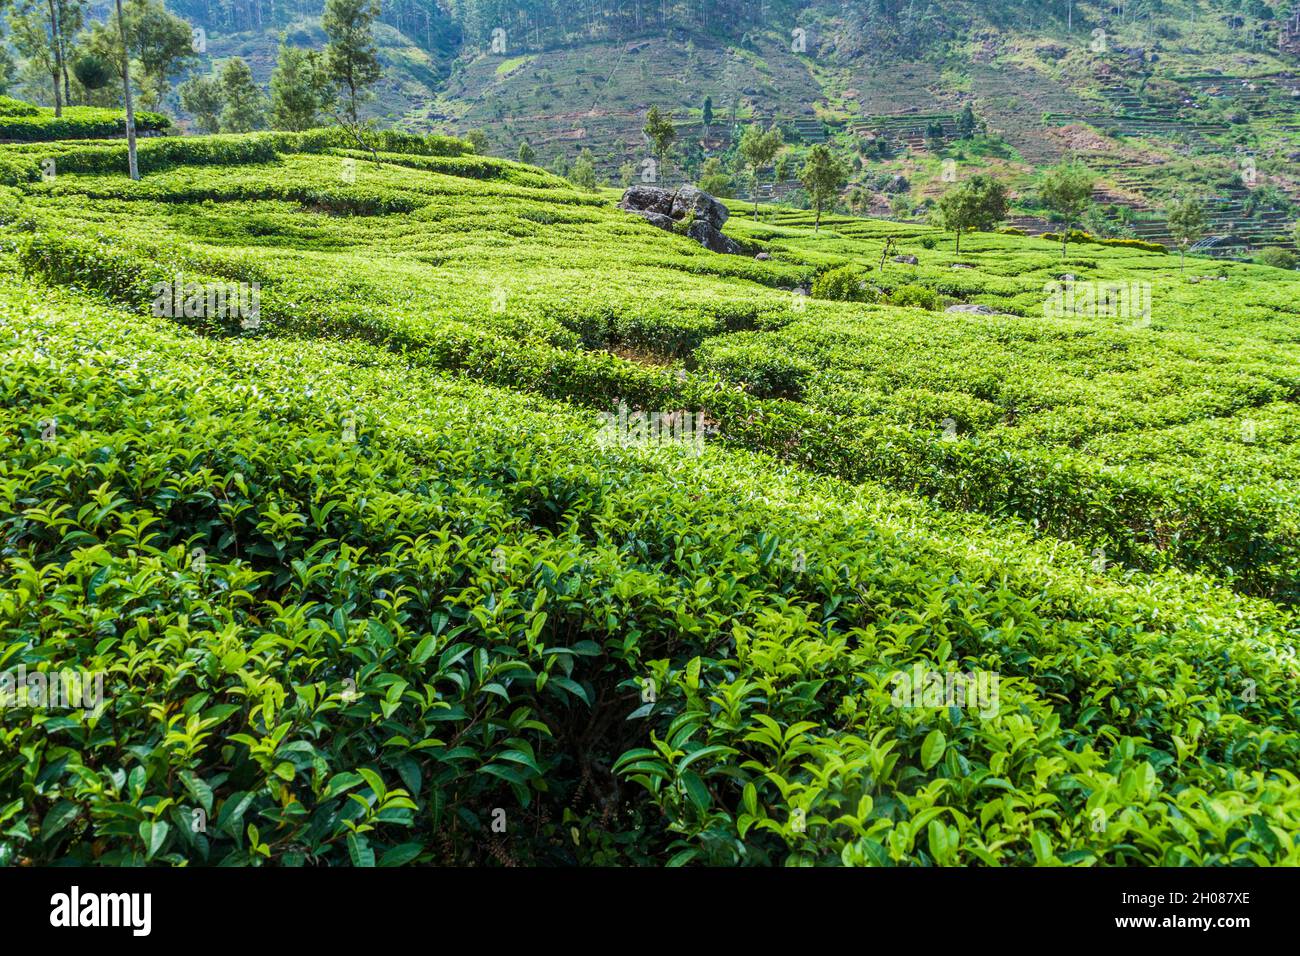 Teeplantagen in Bergen in der Nähe von Haputale, Sri Lanka Stockfoto